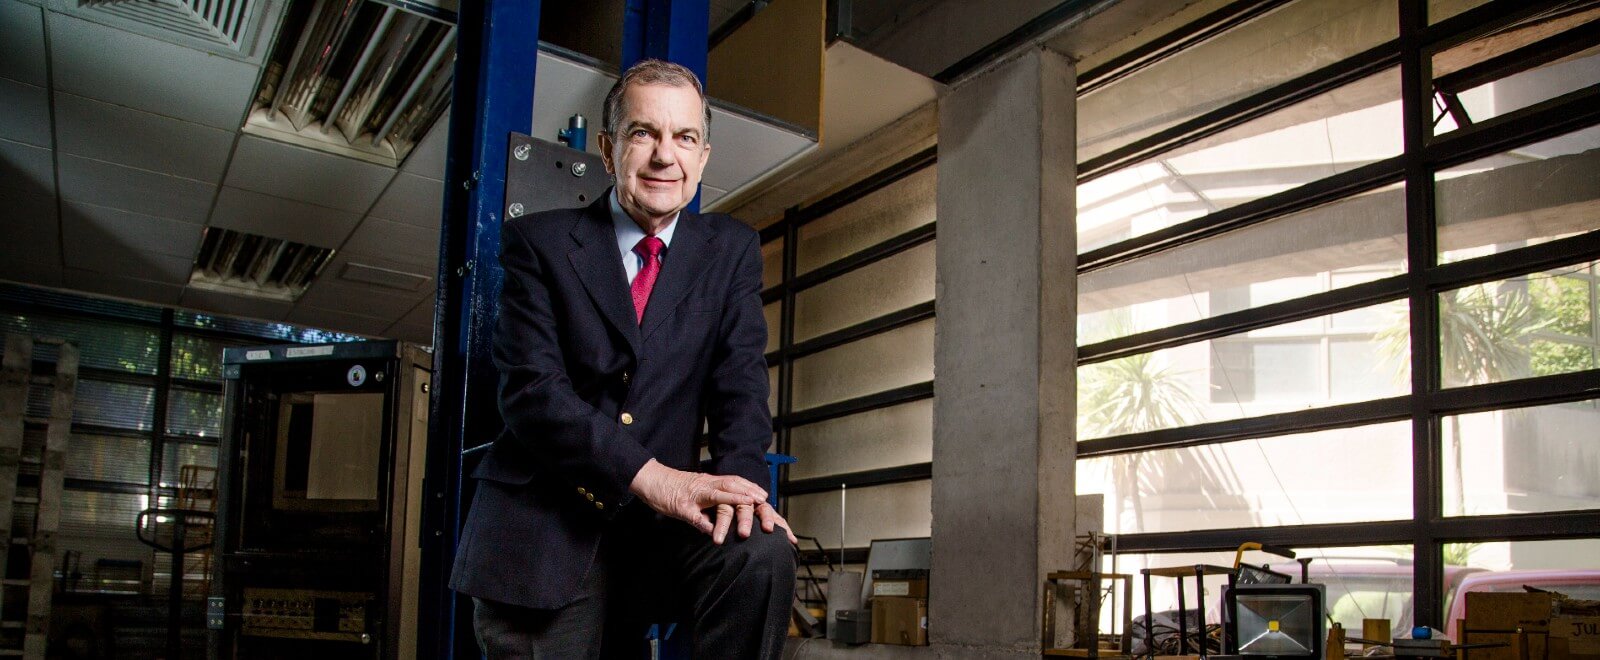 Académico Mauricio Sarrazín es nombrado Profesor Emérito de la Universidad de Chile